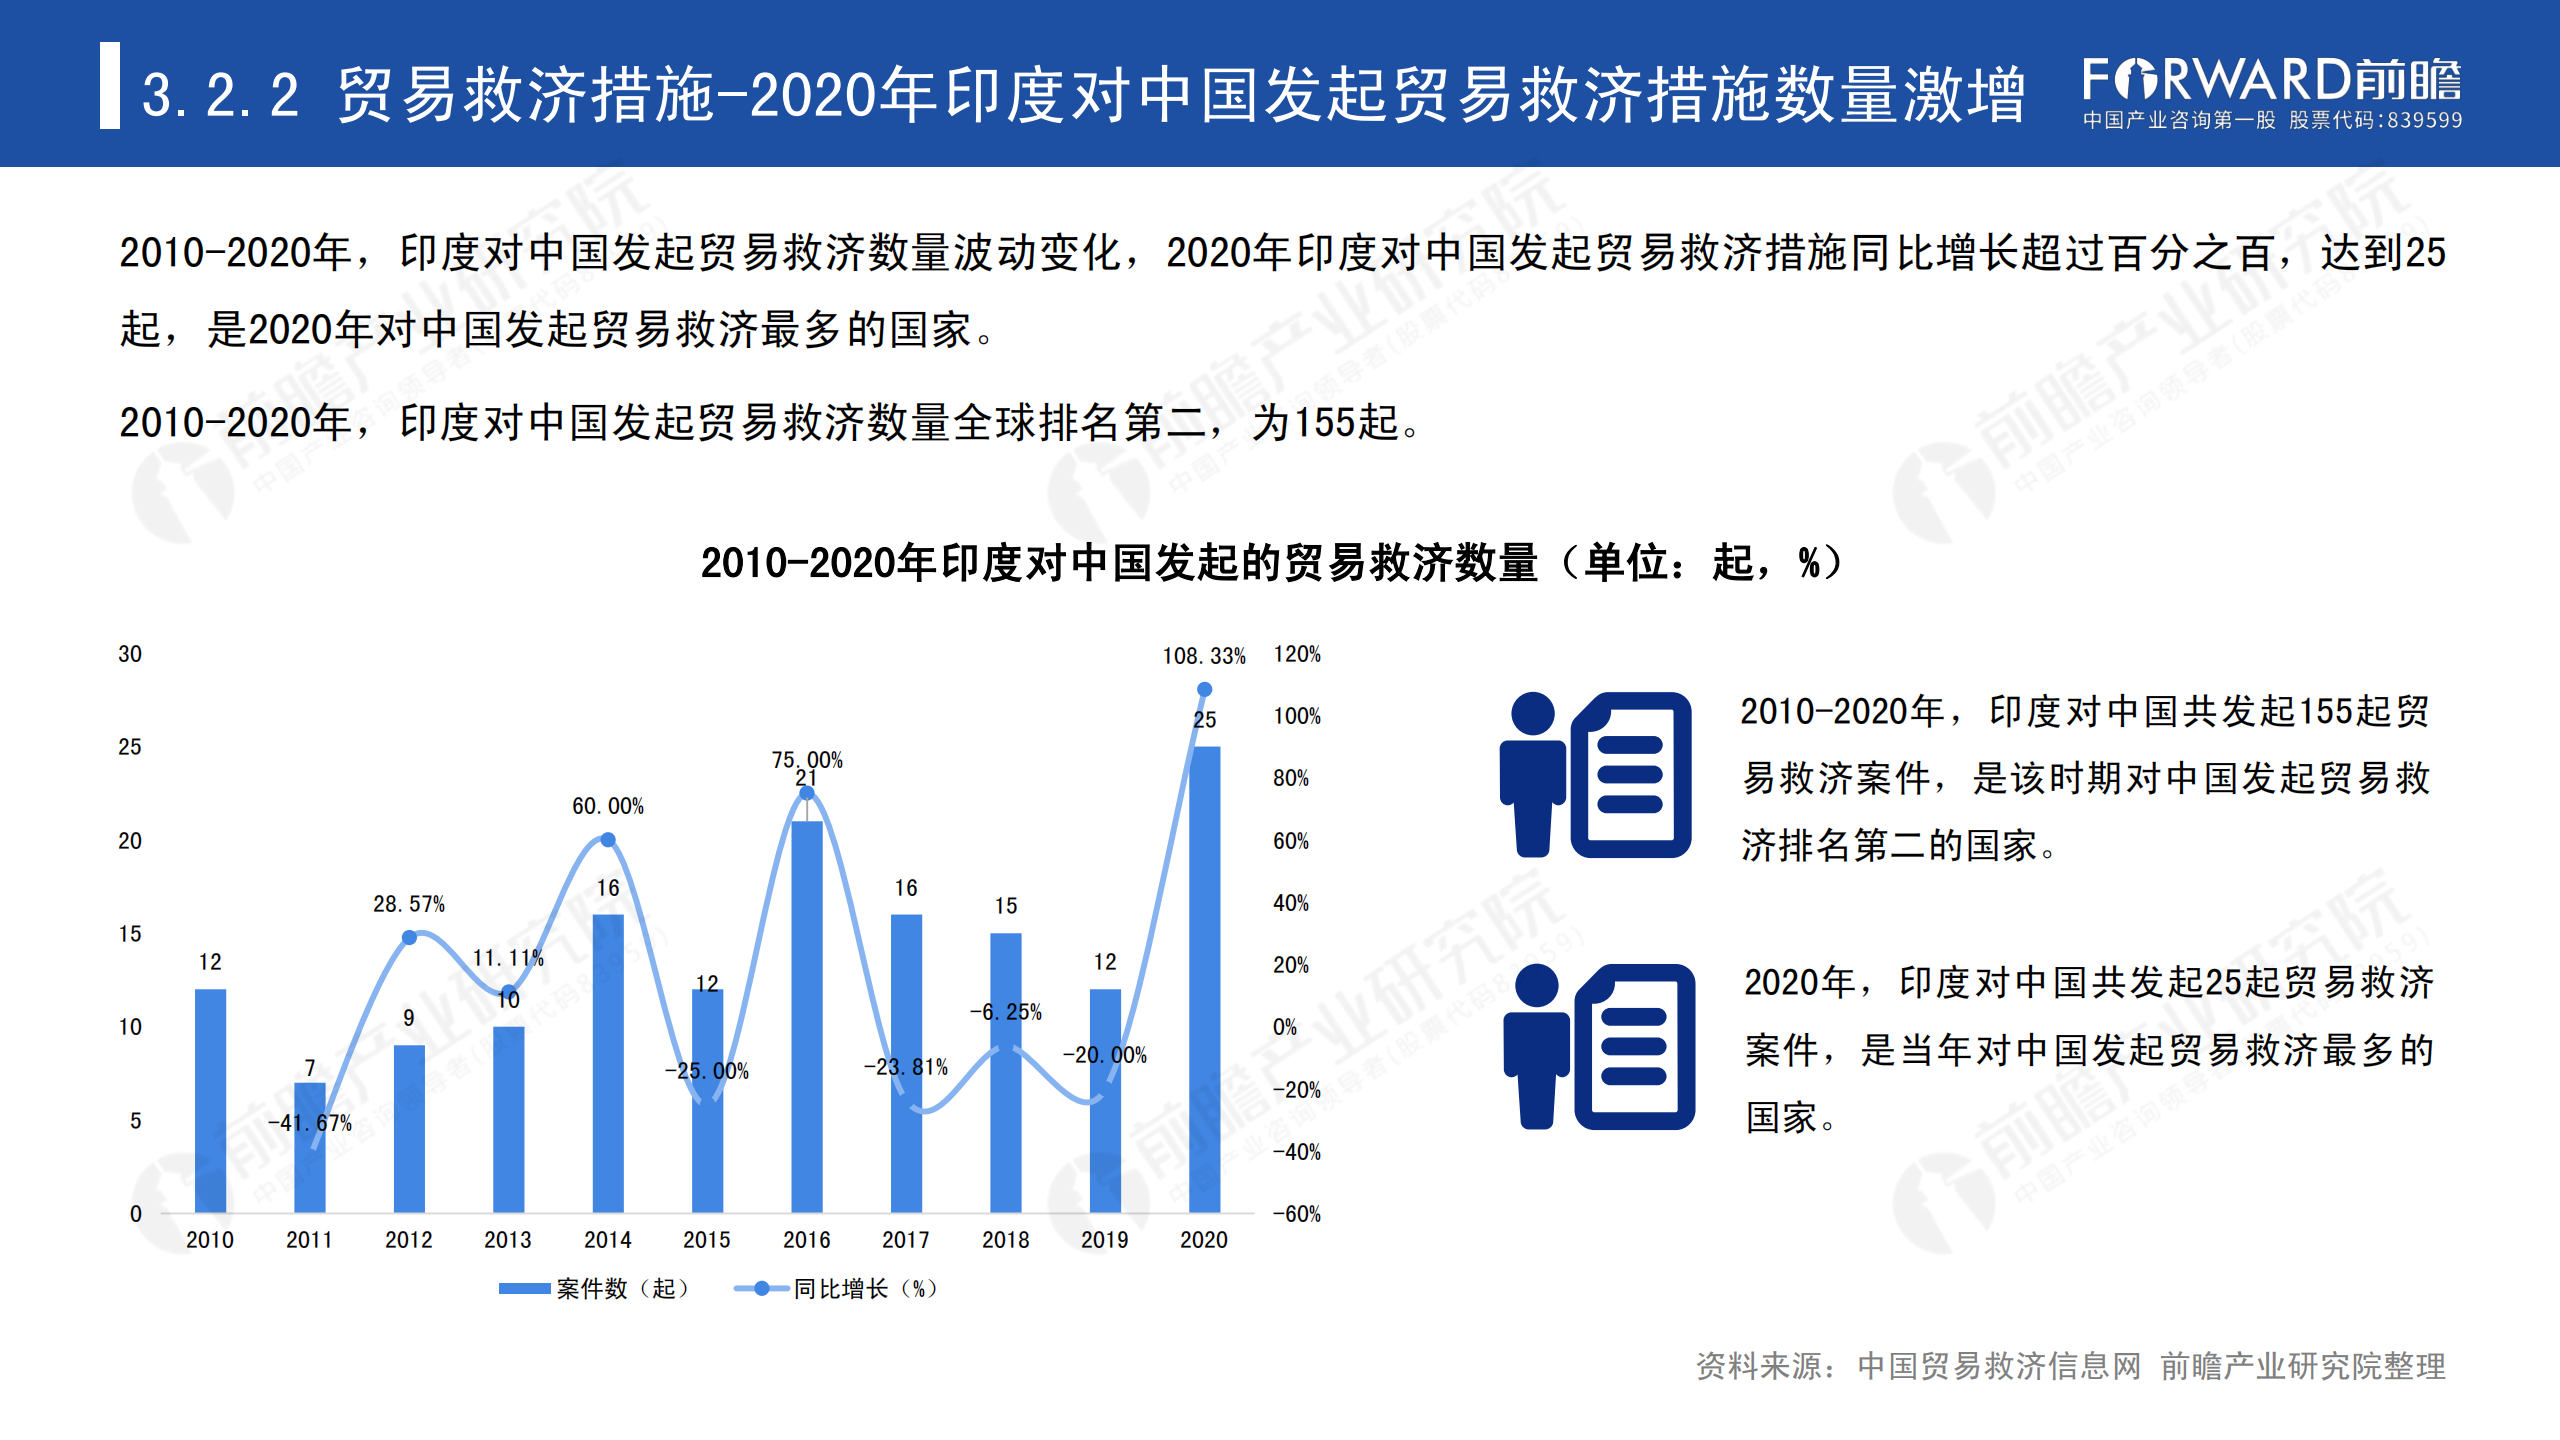 2020年中国贸易摩擦全景回顾-前瞻-2021-64页_36.png